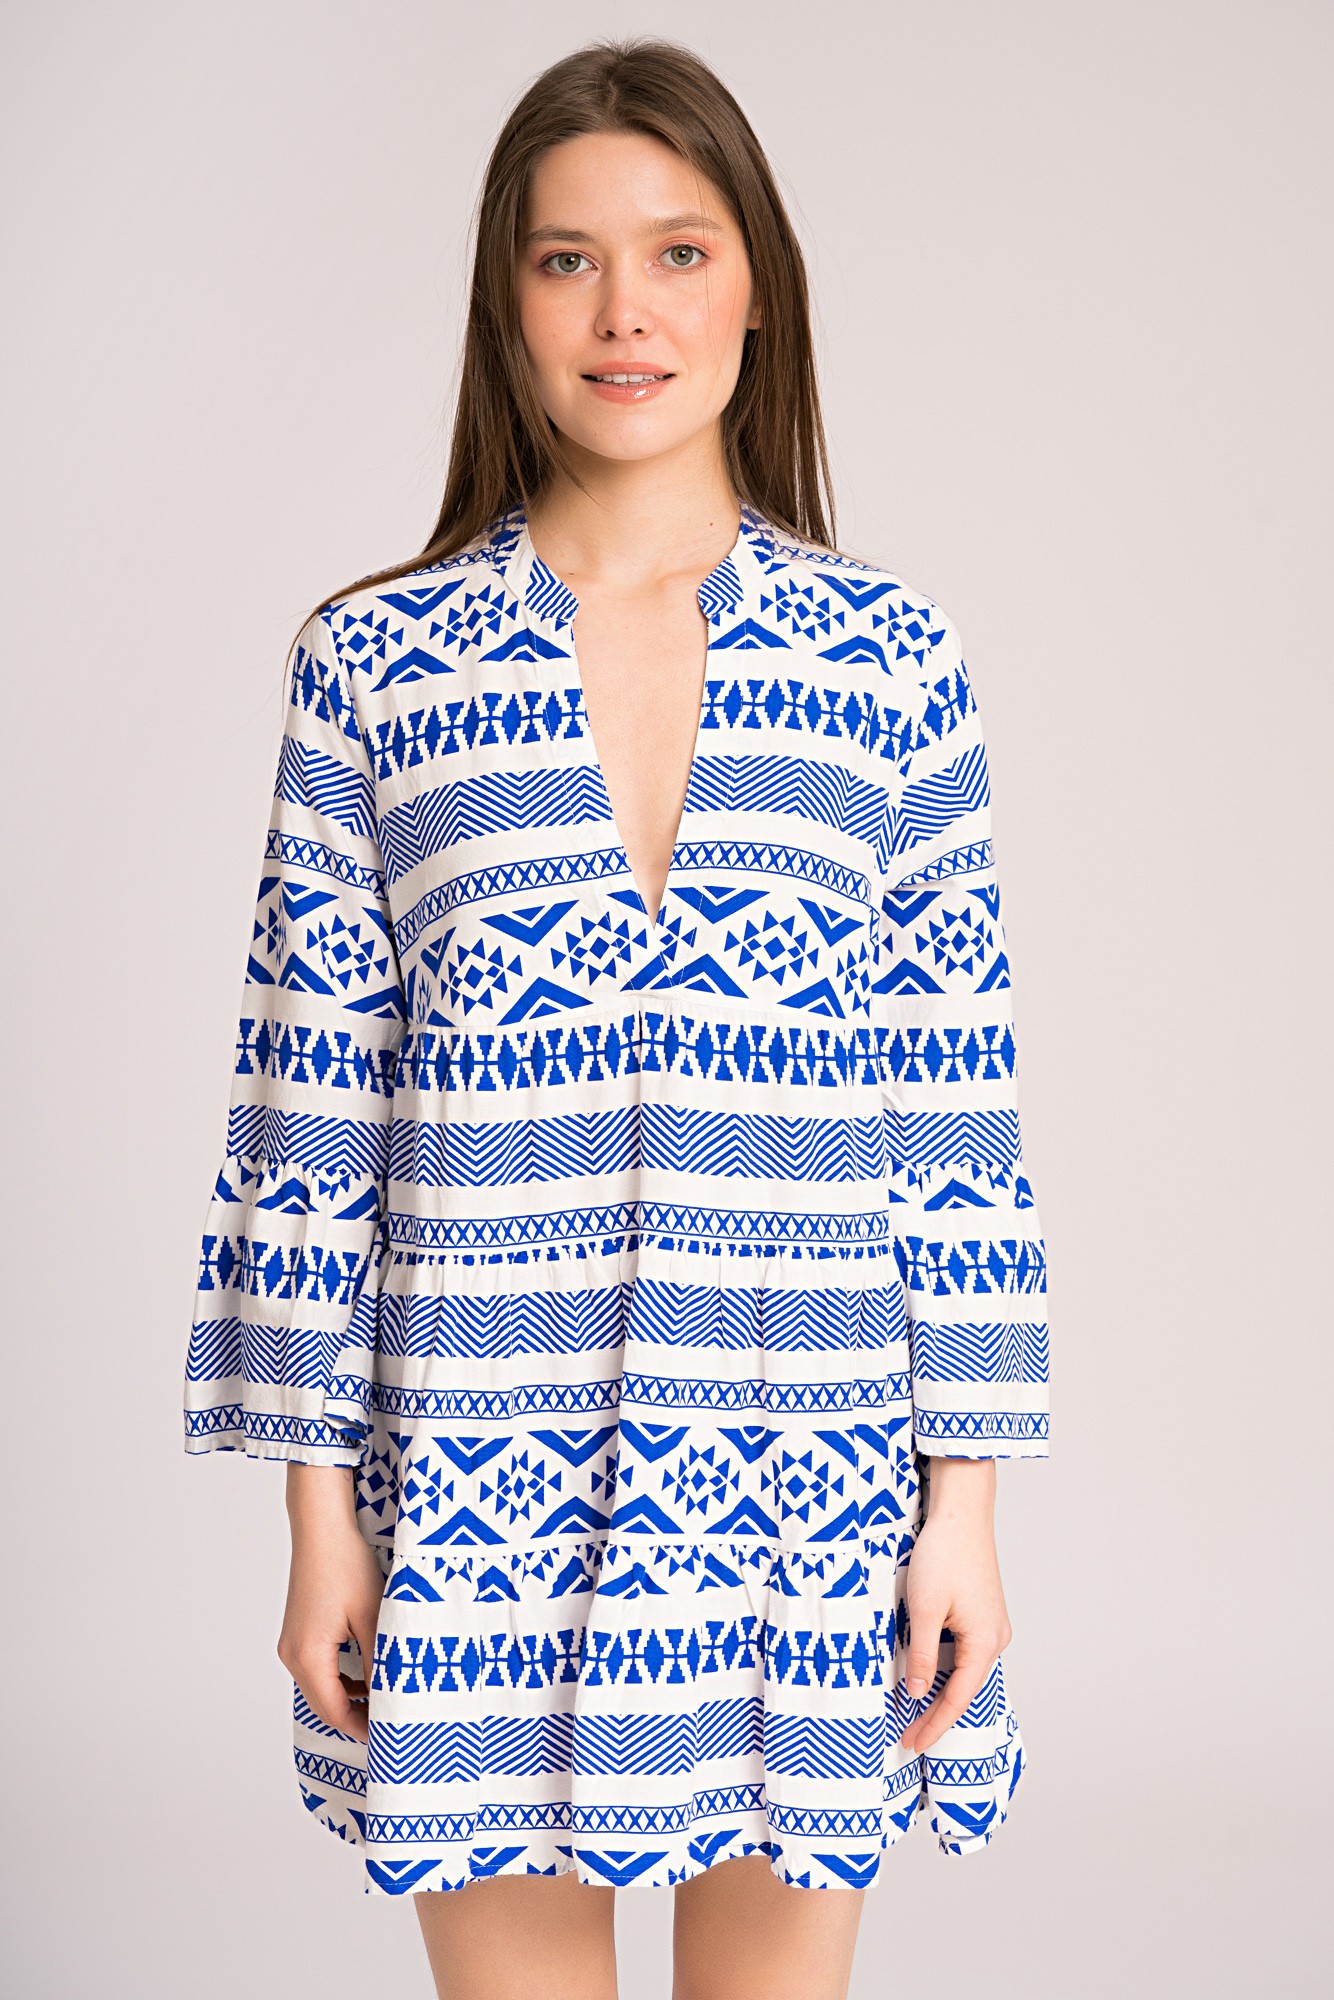 Tunica tip rochie alba cu imprimeu geometric albastru